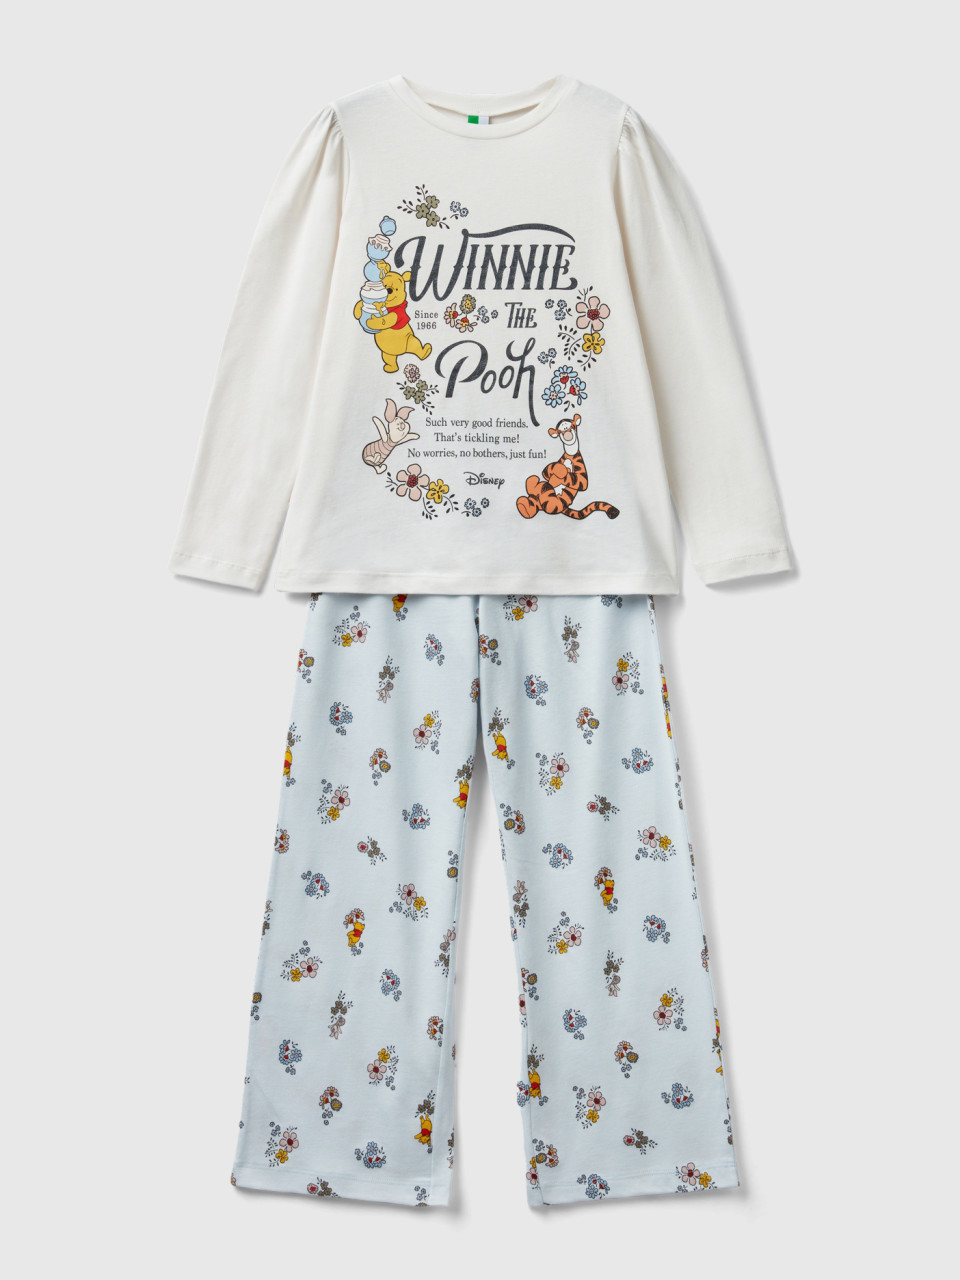 Benetton, Pijama Largo ©disney Winnie The Pooh, Blanco Crema, Niños